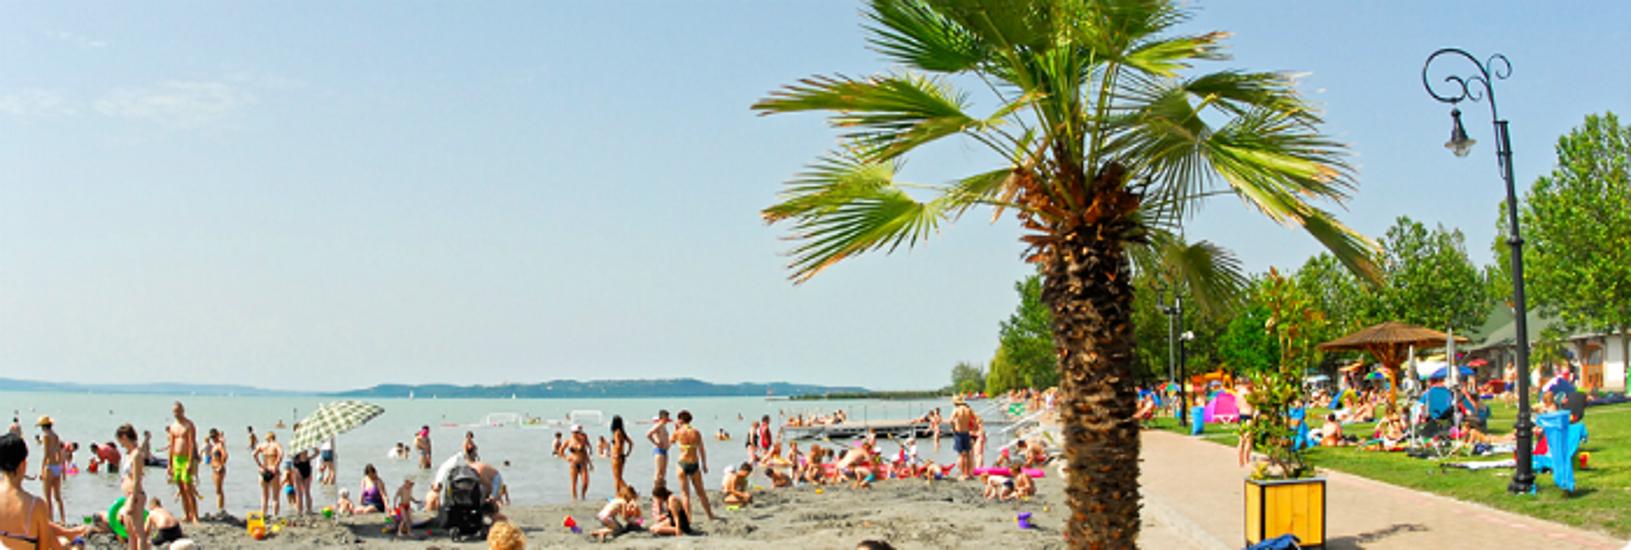 Summer + Hungary = Balaton – The Best Beaches Around The “Hungarian Sea”